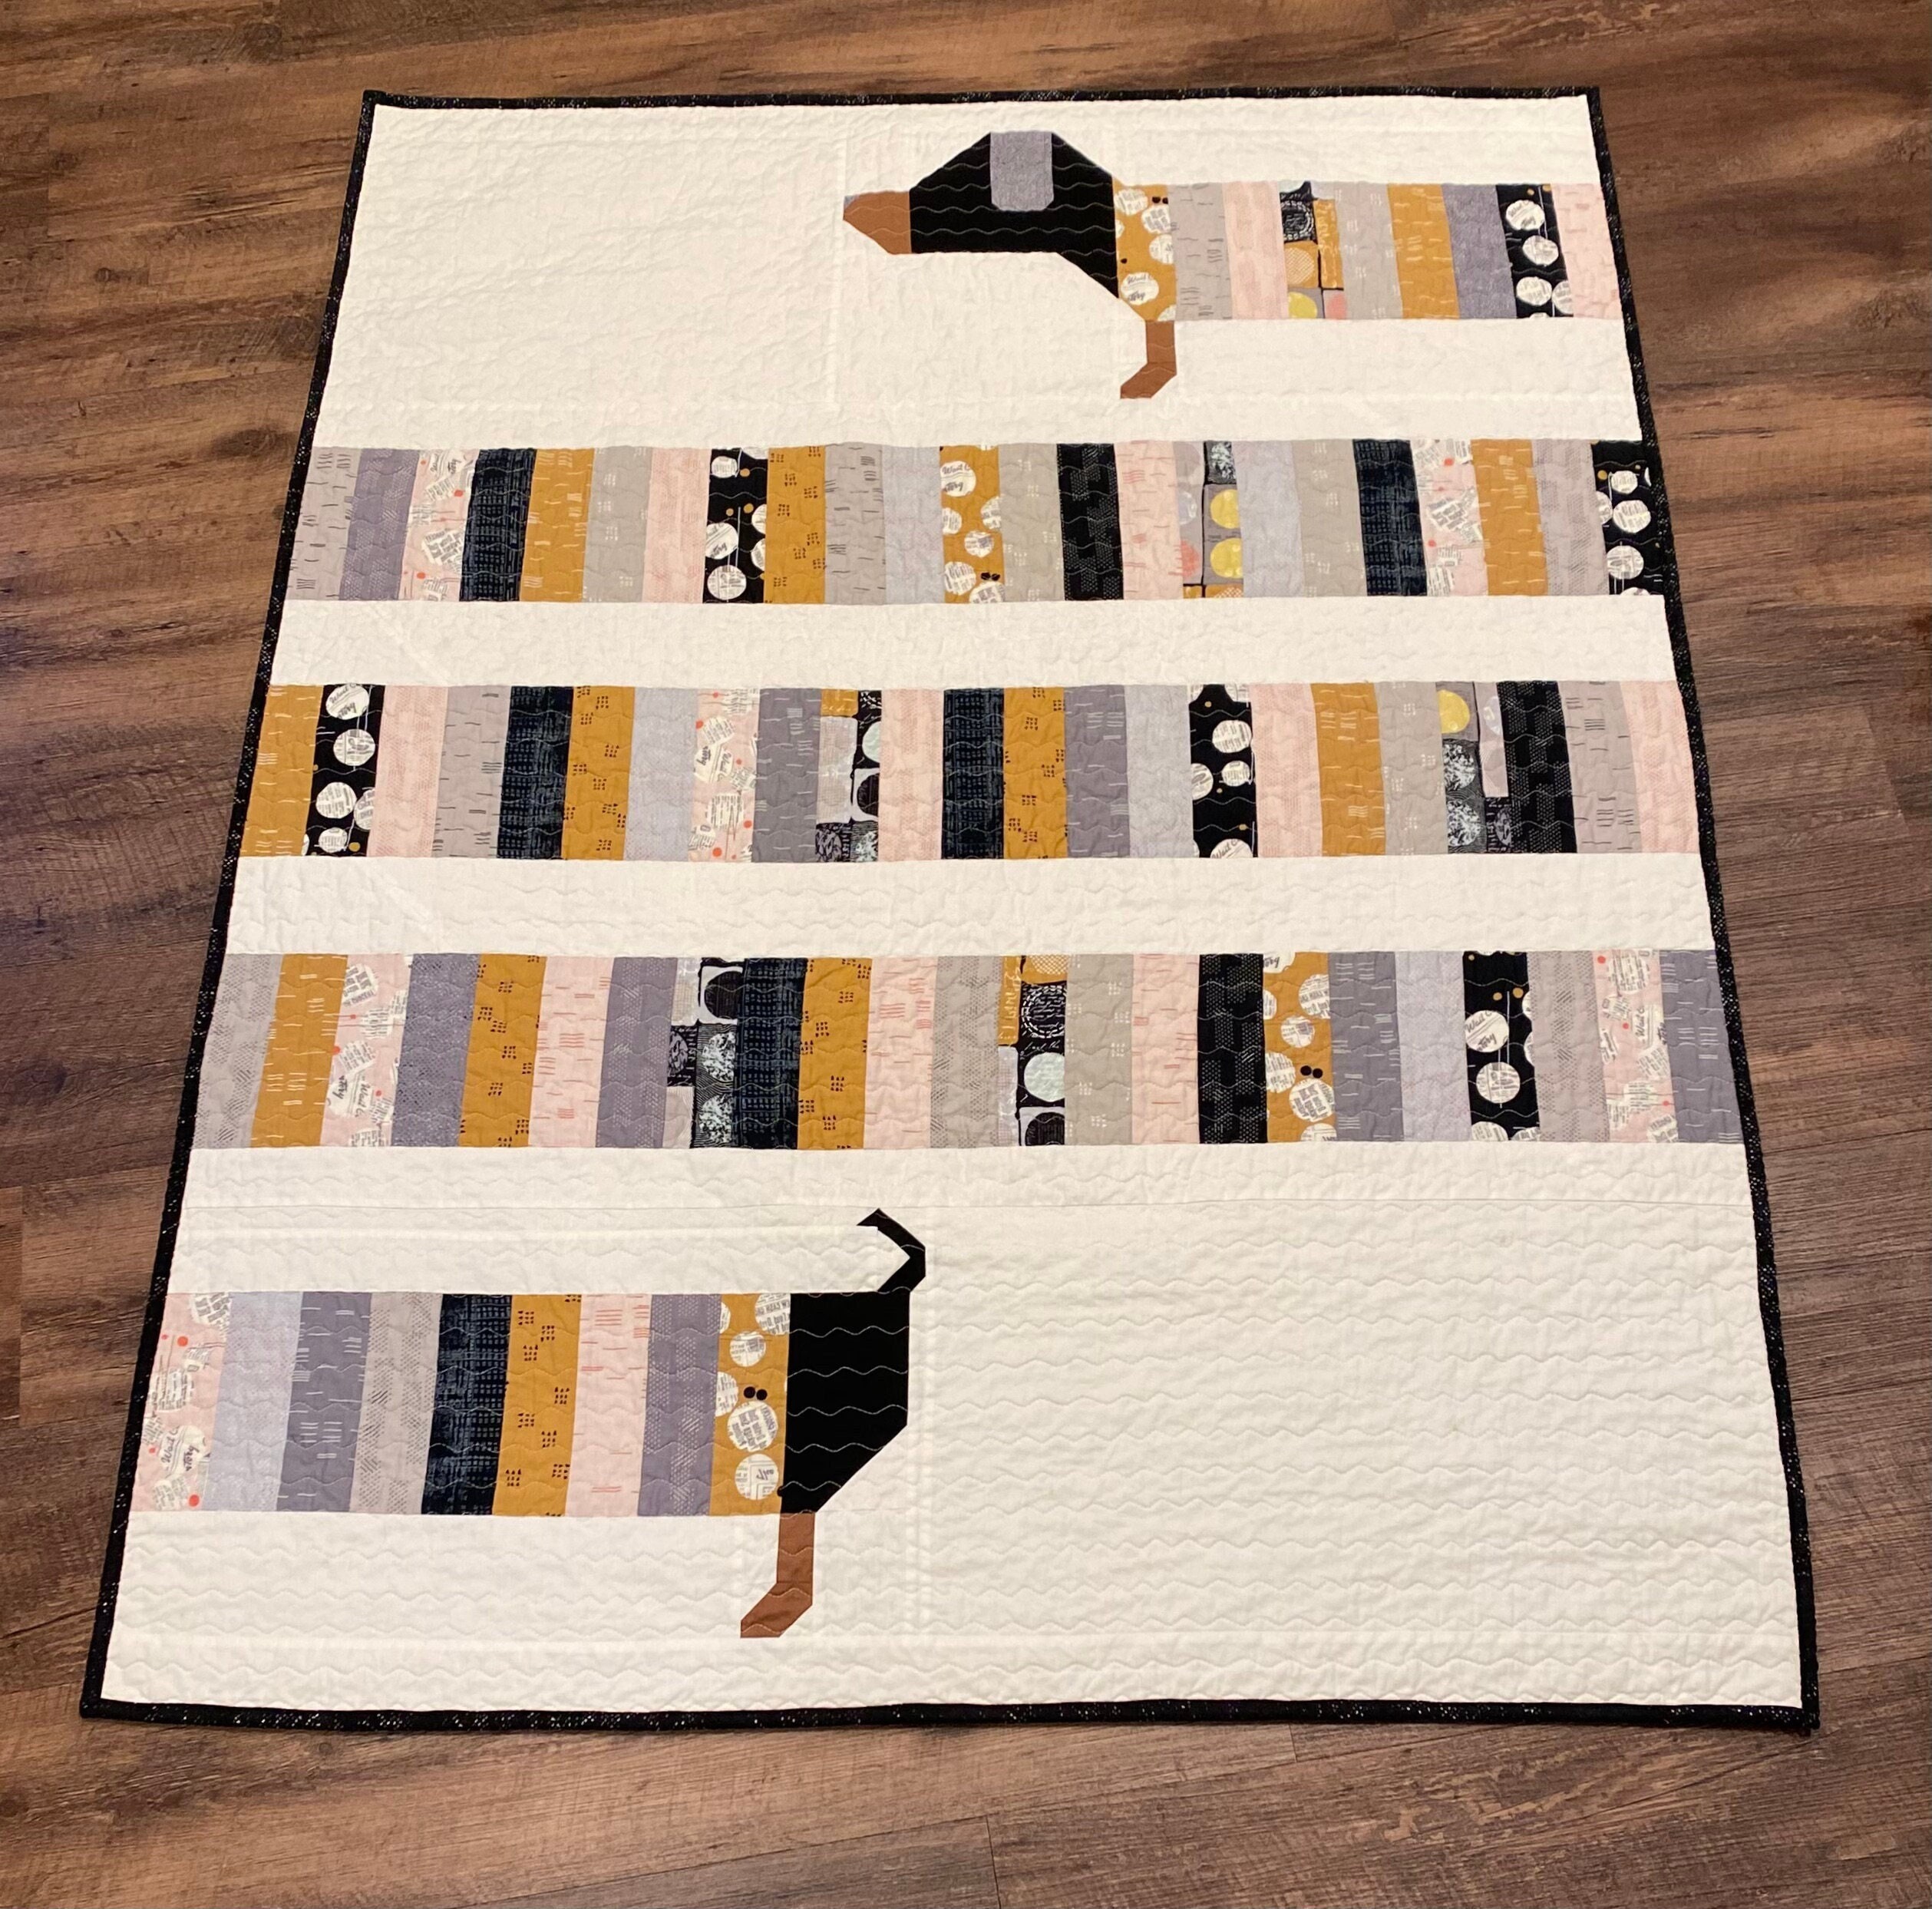 The Puppies Puppy Dog Quilt Pattern by Elizabeth Hartman 